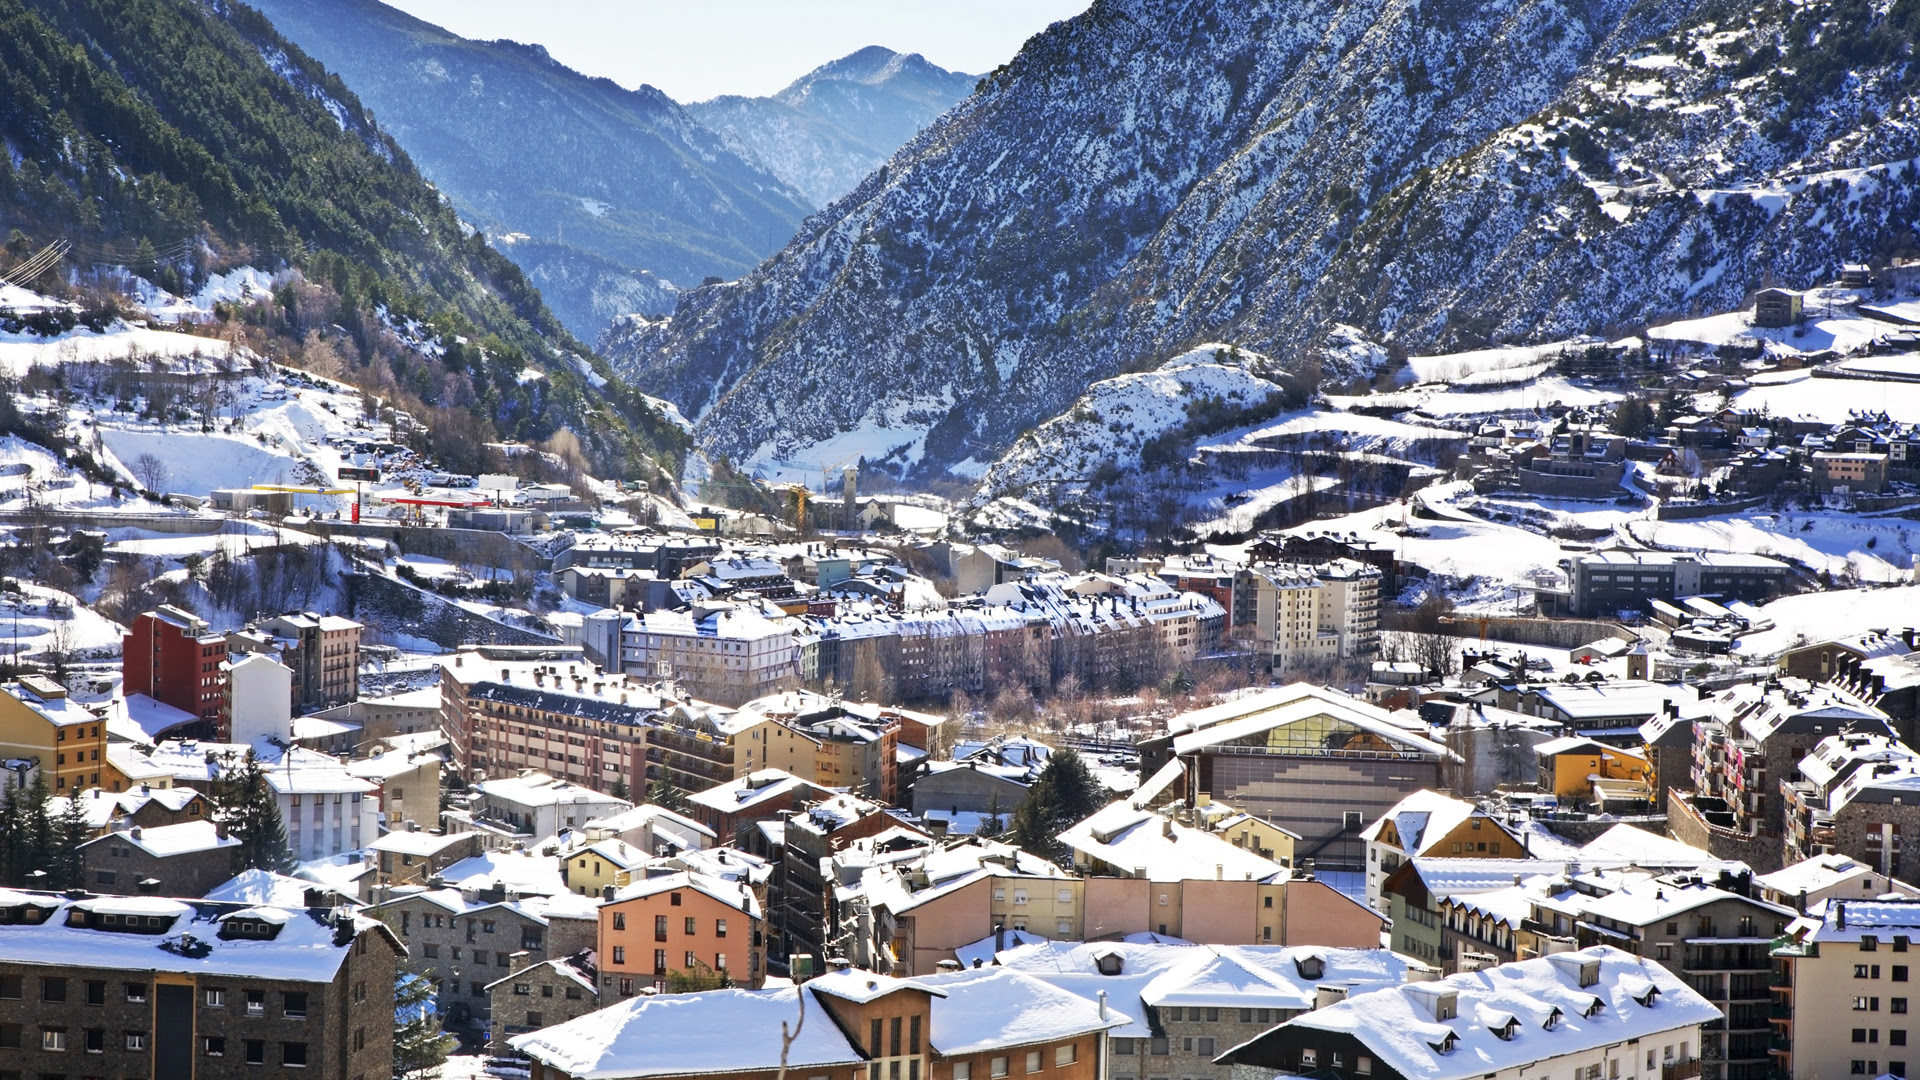 Andorra está rodeada por Francia y España y esto hace que el territorio ofrezca una mezcla de cultura atractiva para los turistas (Istock)